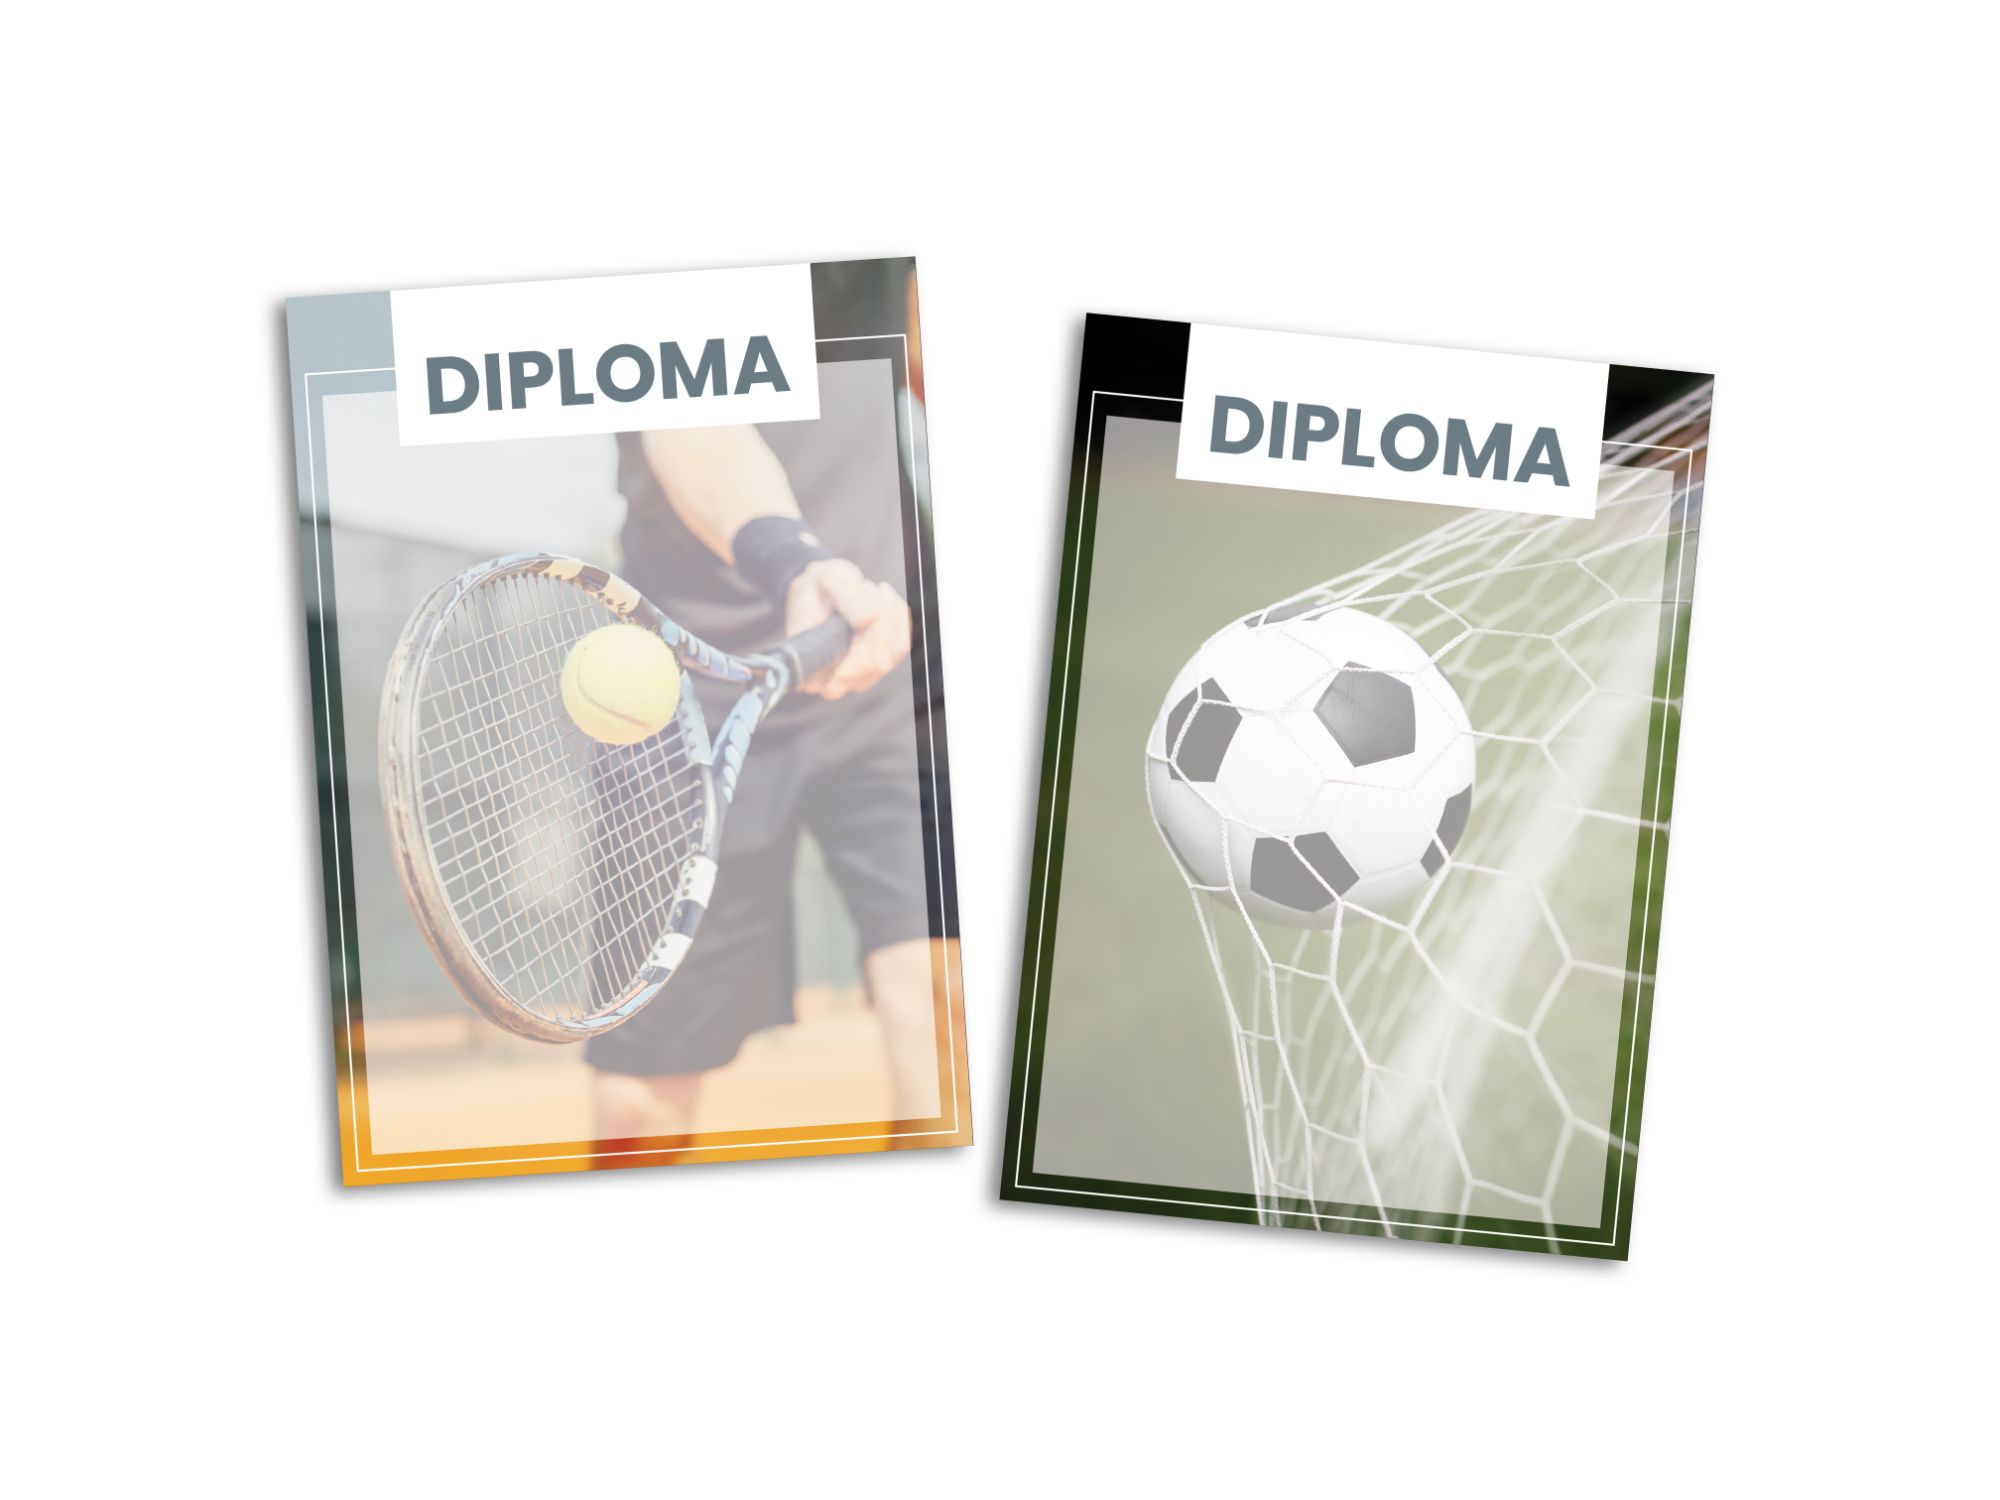 Diploma tenis in nogomet